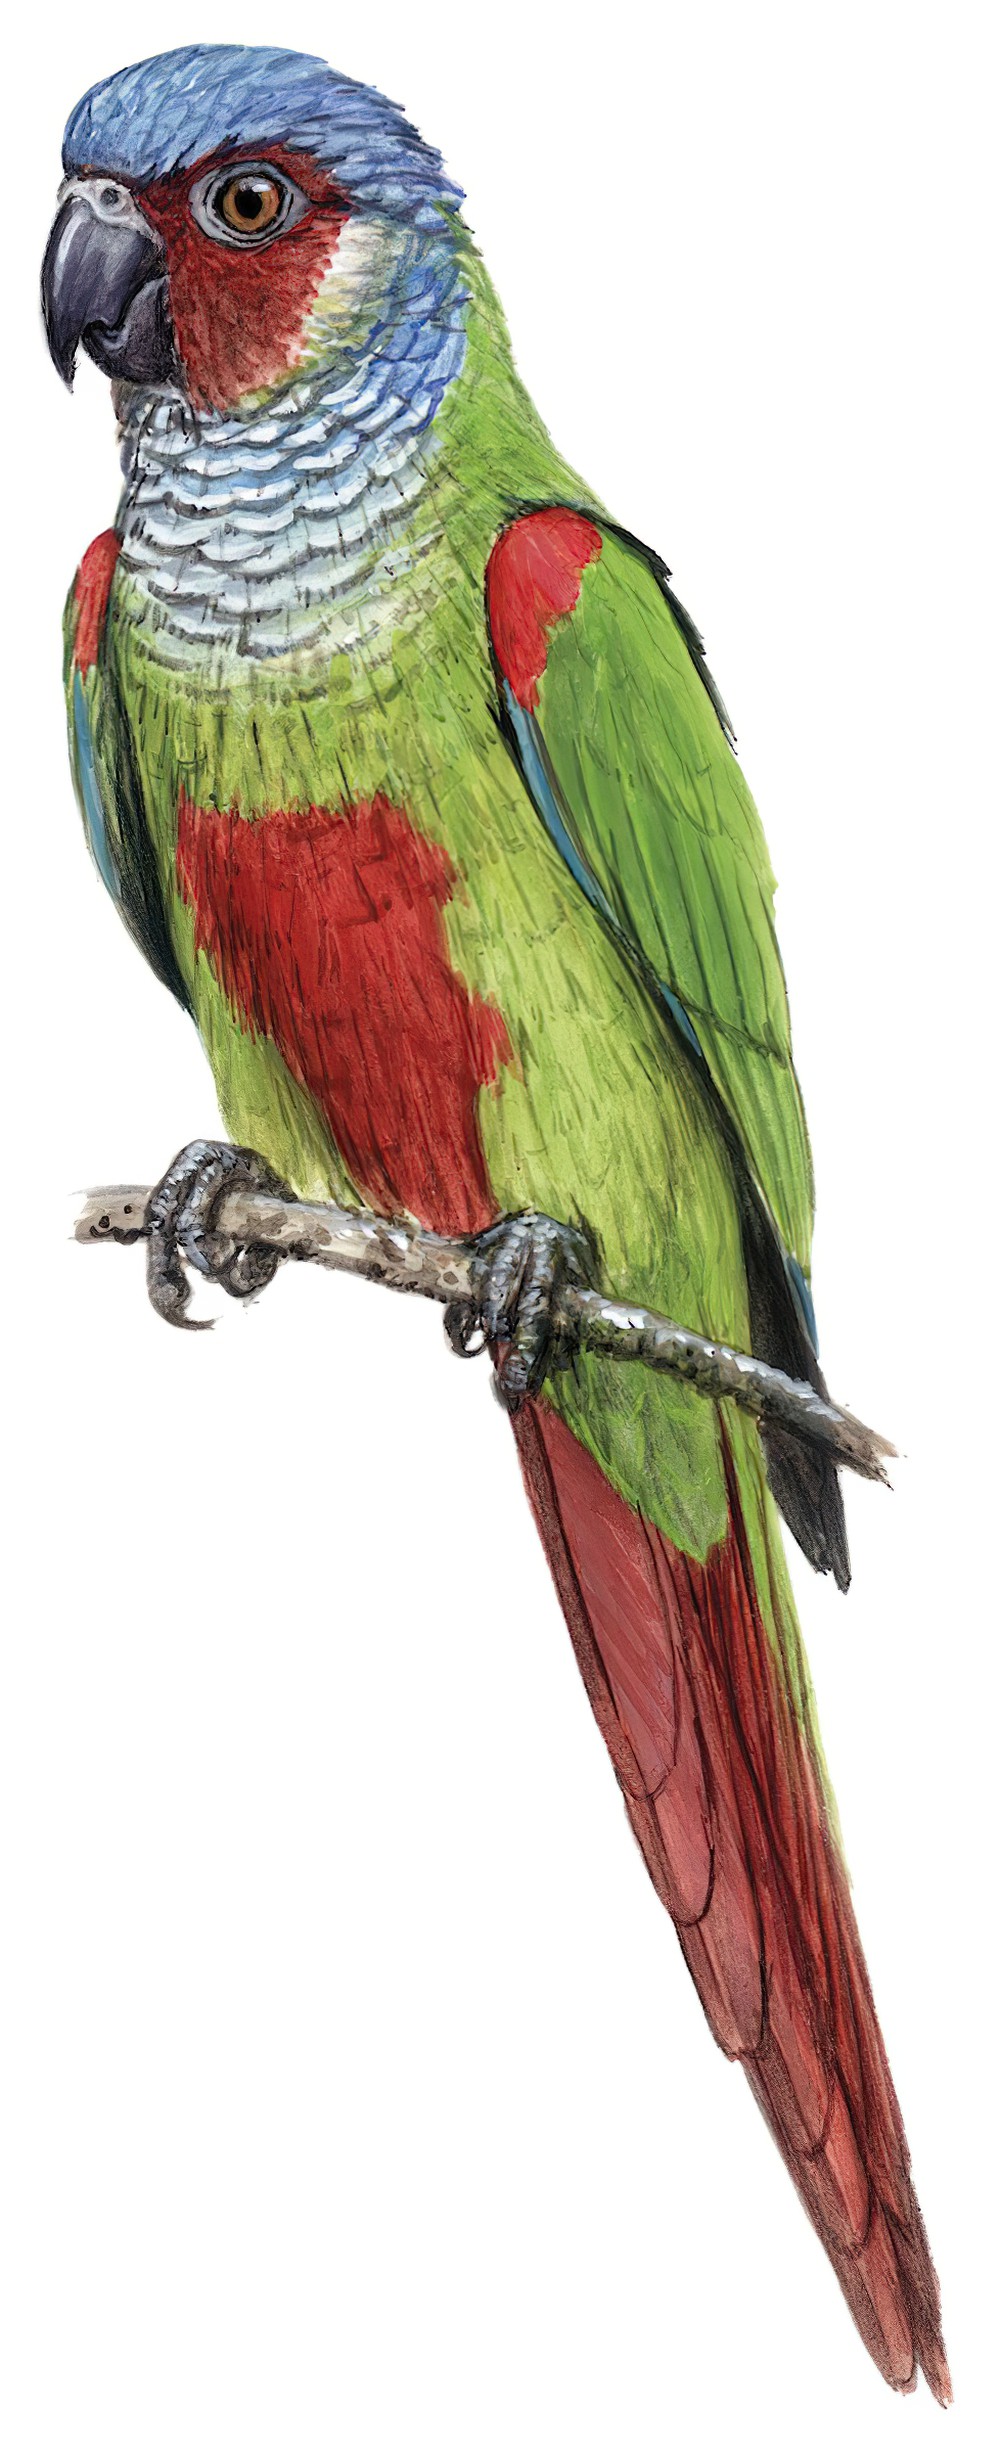 普氏鹦哥 / Pfrimer's Parakeet / Pyrrhura pfrimeri